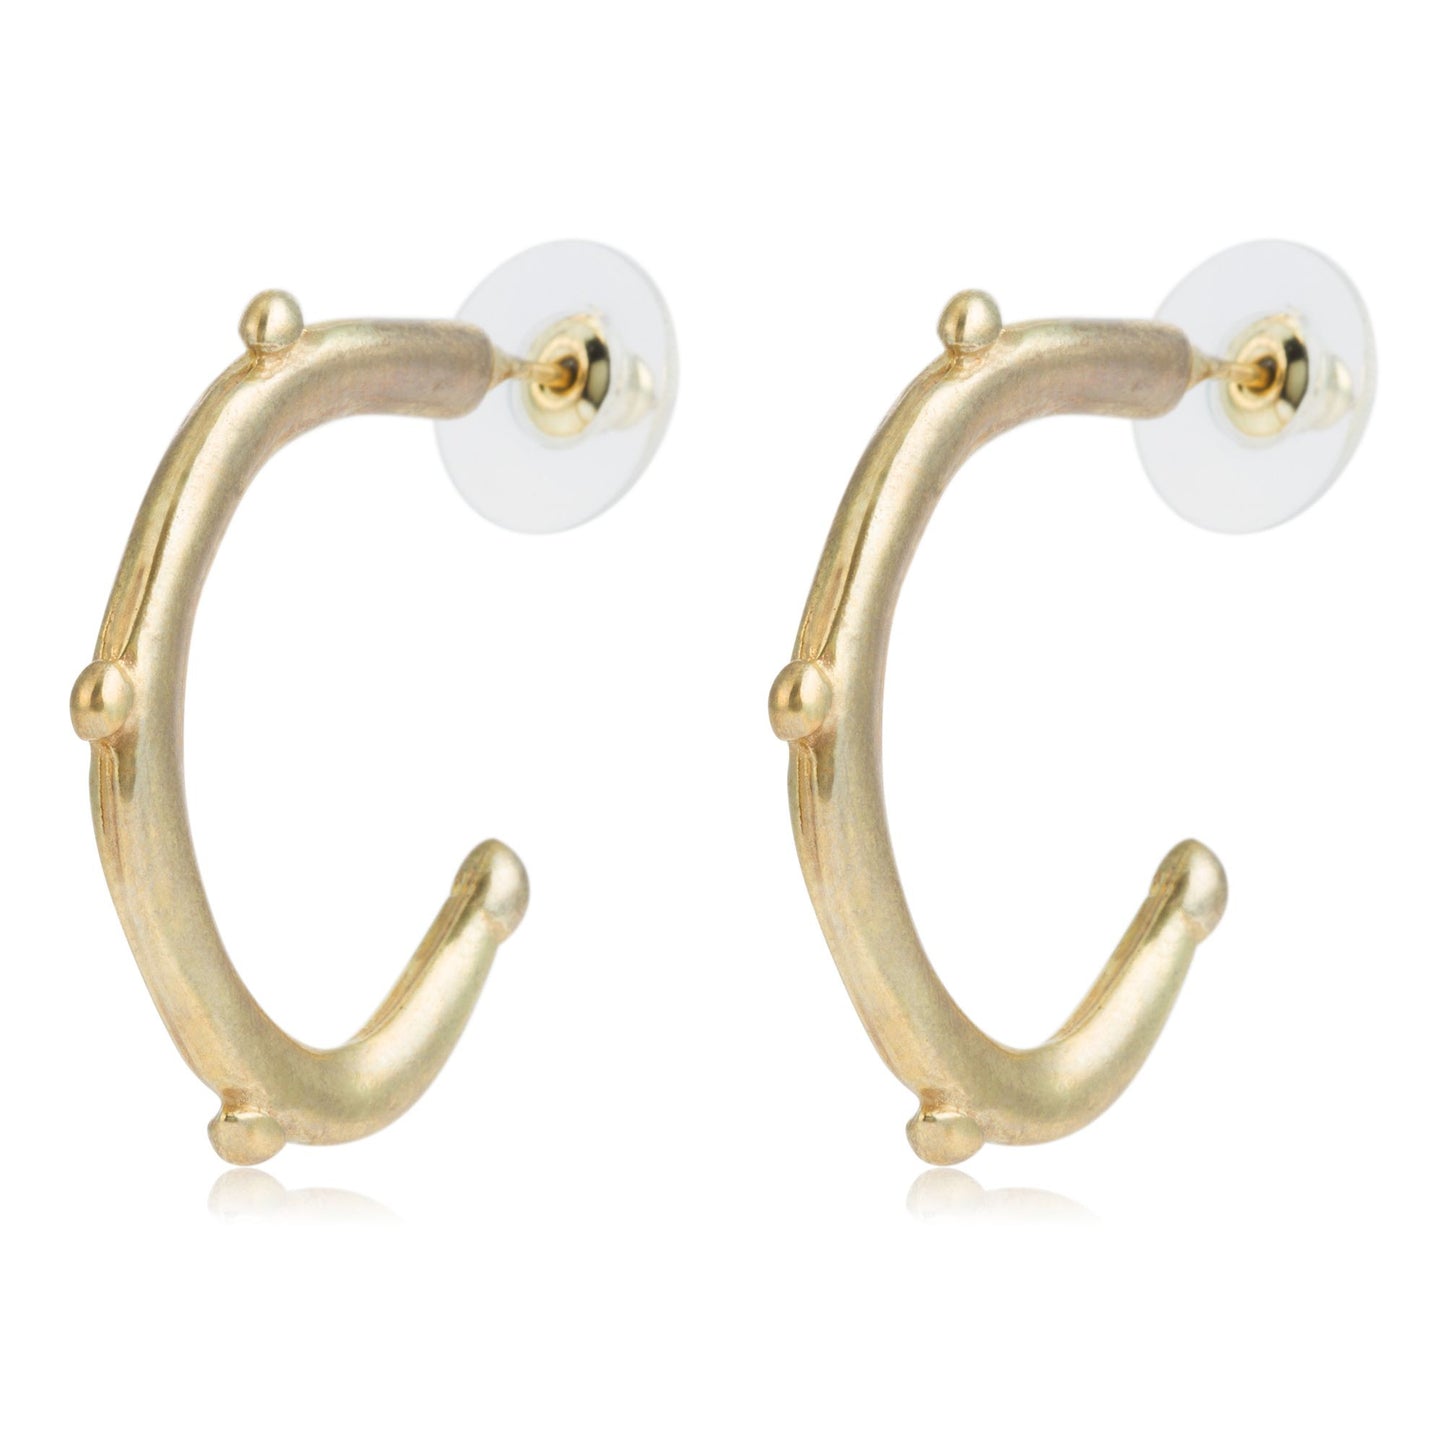 Golden hoop earring with tassels